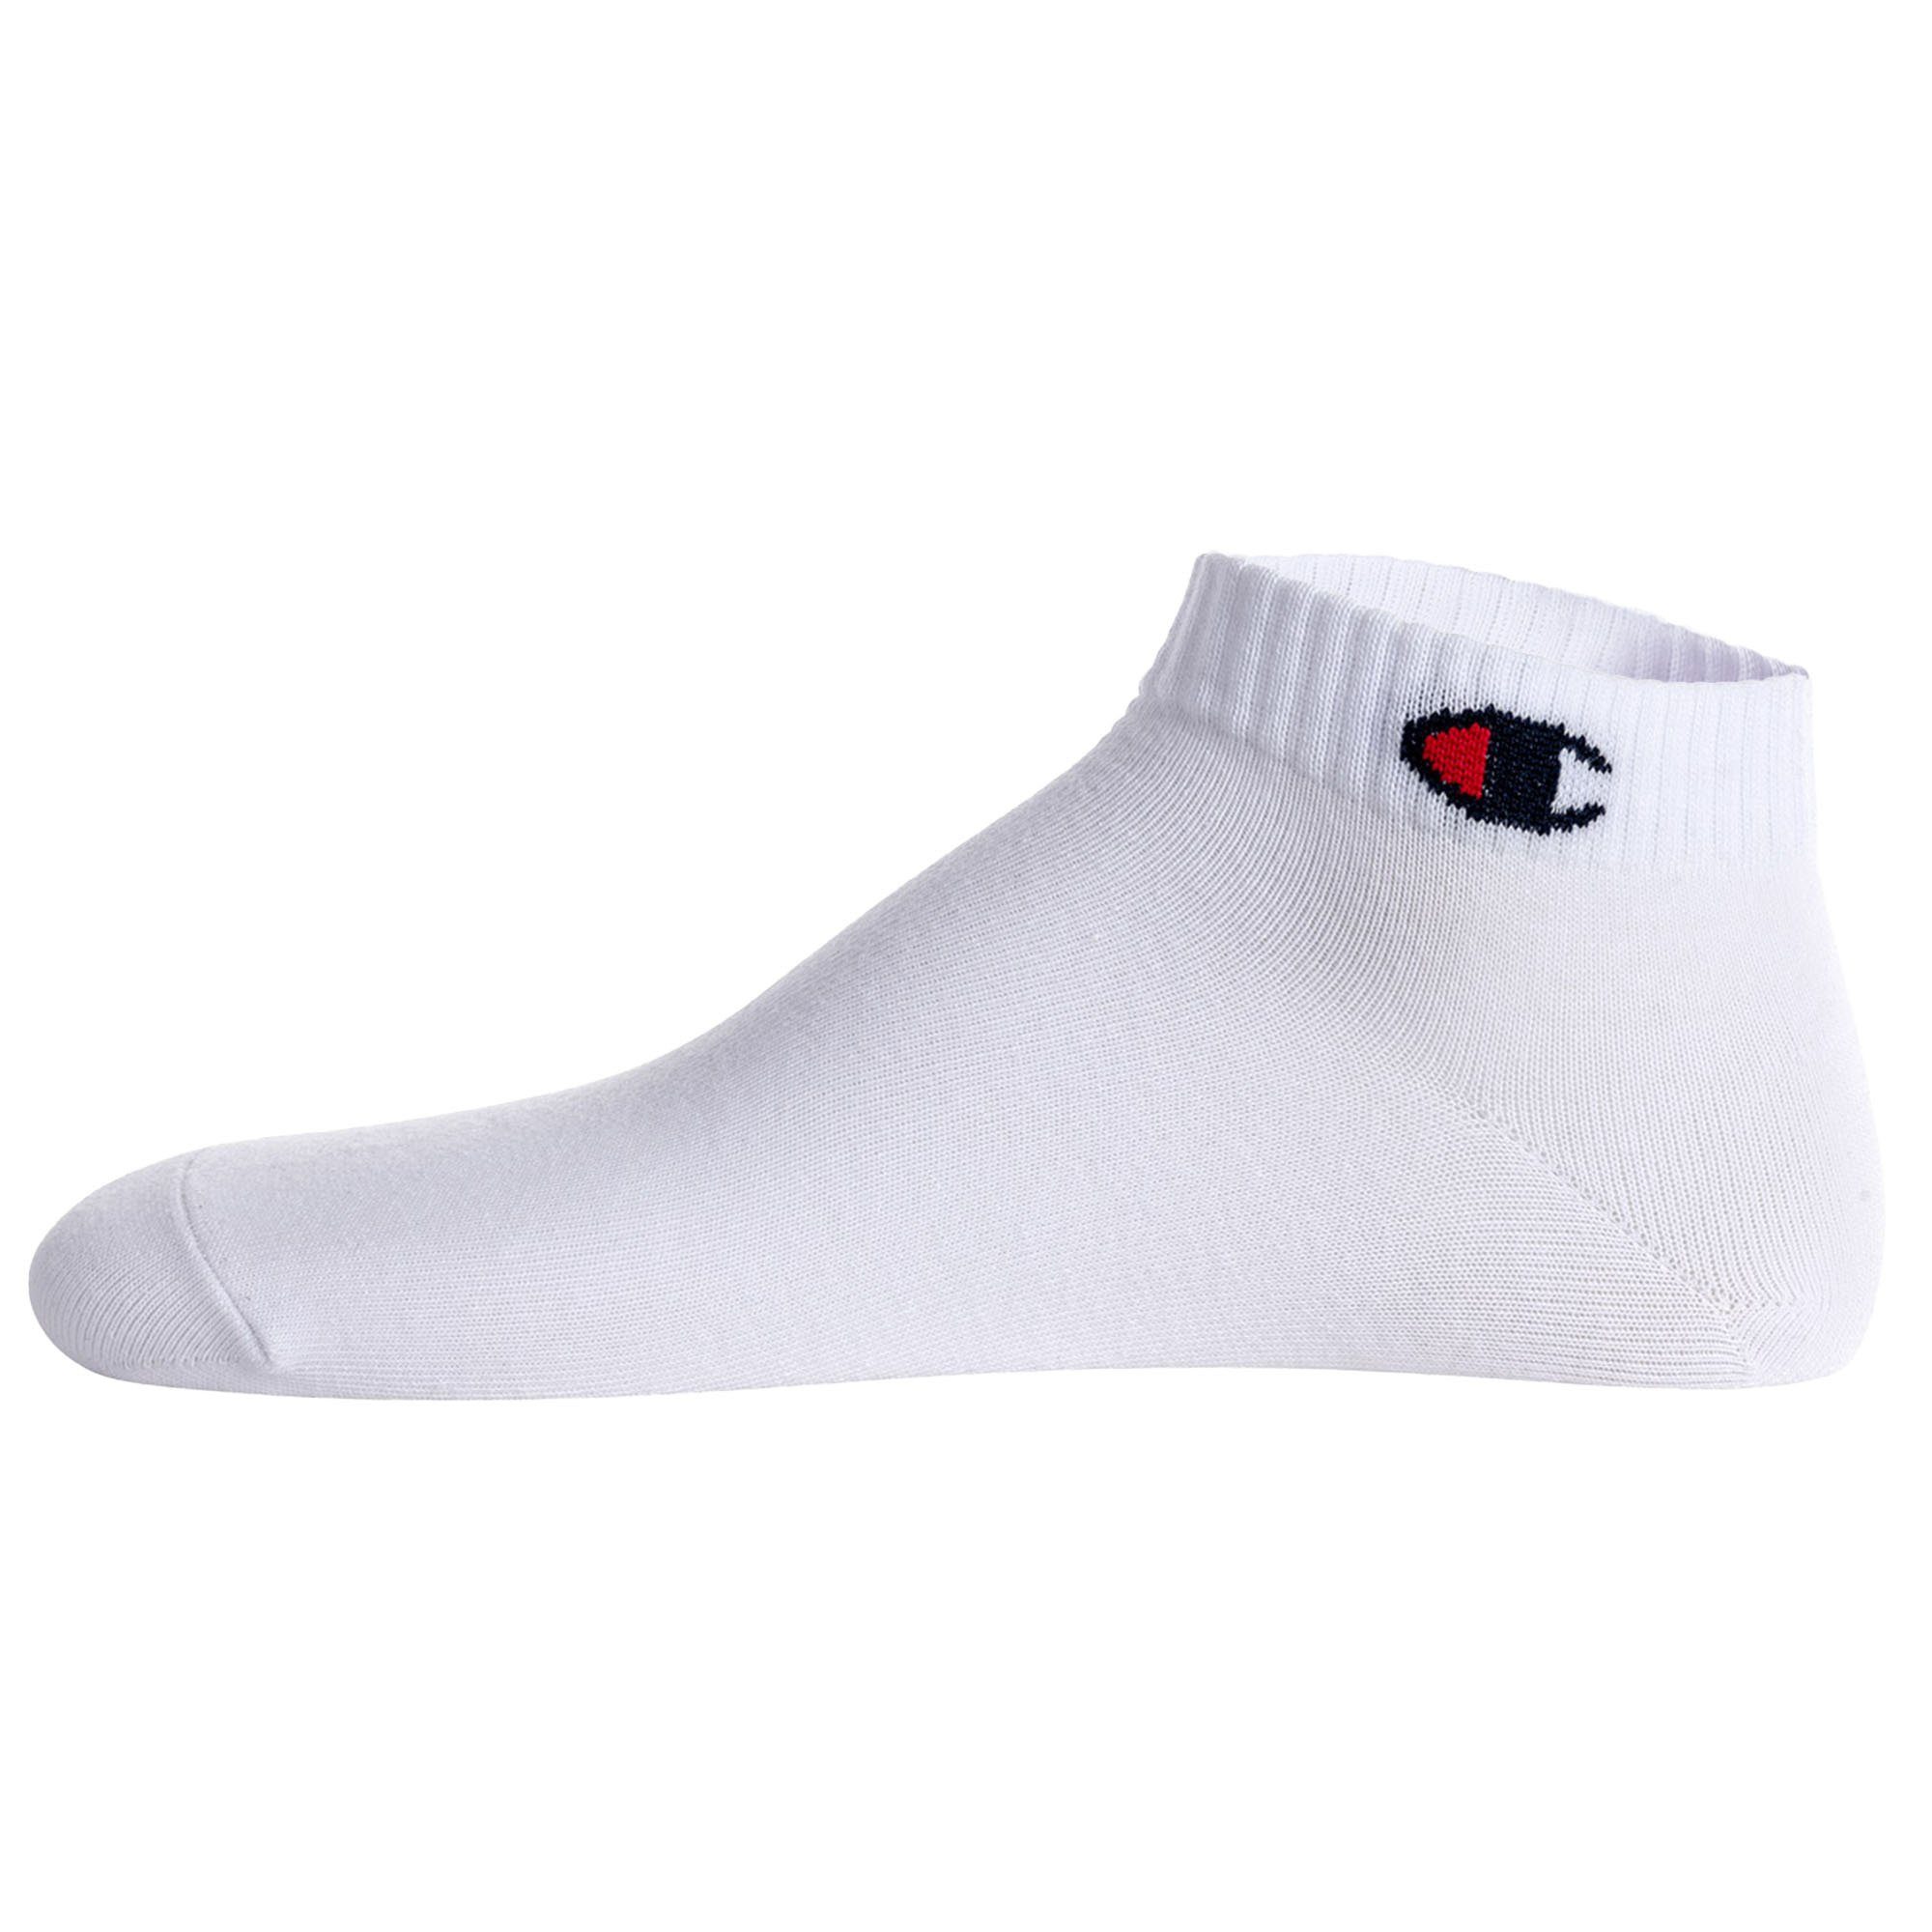 Paar Socken 6 Socken, Crew Champion Unisex Sportsocken - Schwarz/Weiß/Grau Basic